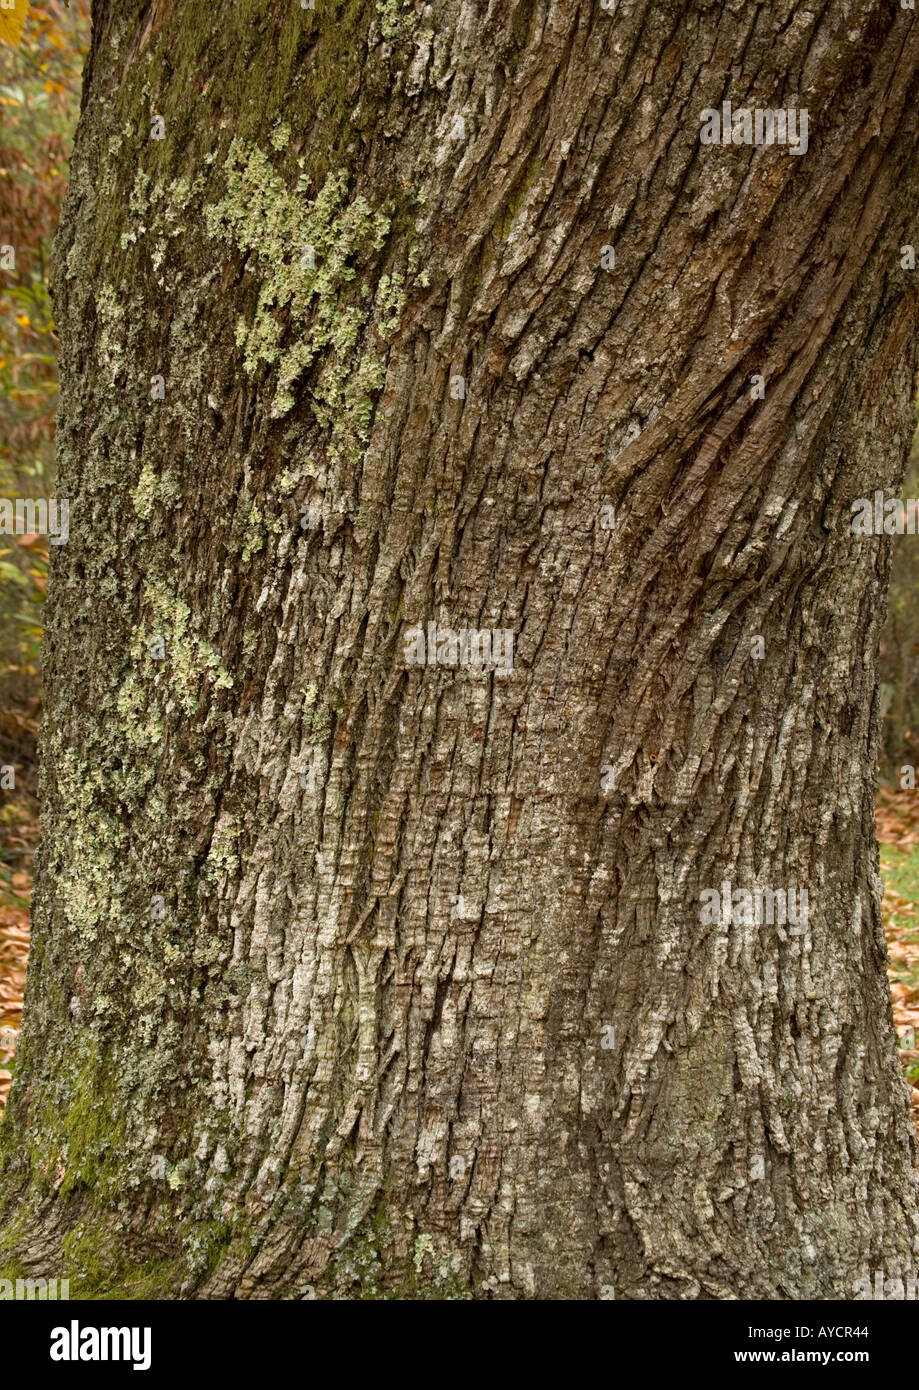 Sweet chesnut (Castanea sativa) in autumn bark of old tree Stock Photo